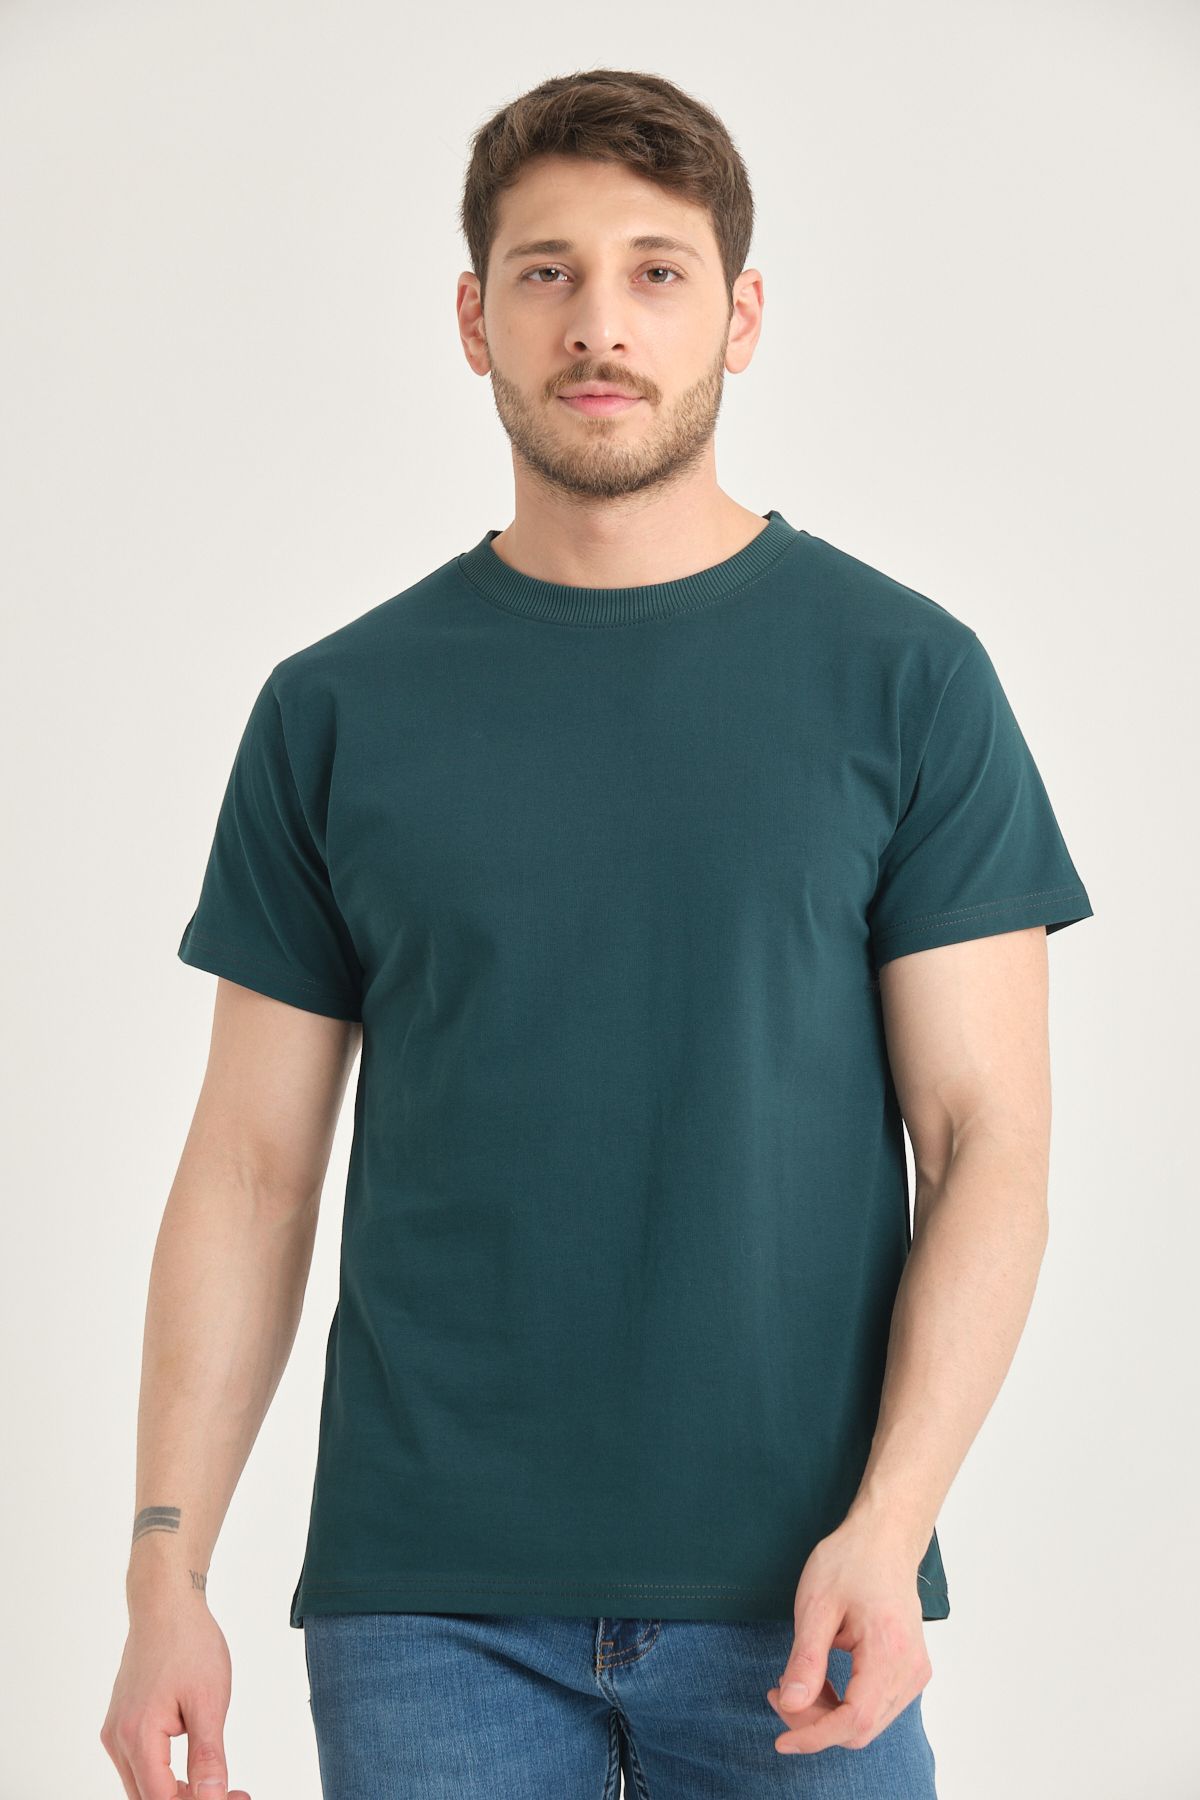 Four Man Erkek %100 Pamuk Standart Kalıp Kolay Kırışmayan Kumaş Özelliğine Sahip Düz Renk Basic Tişört